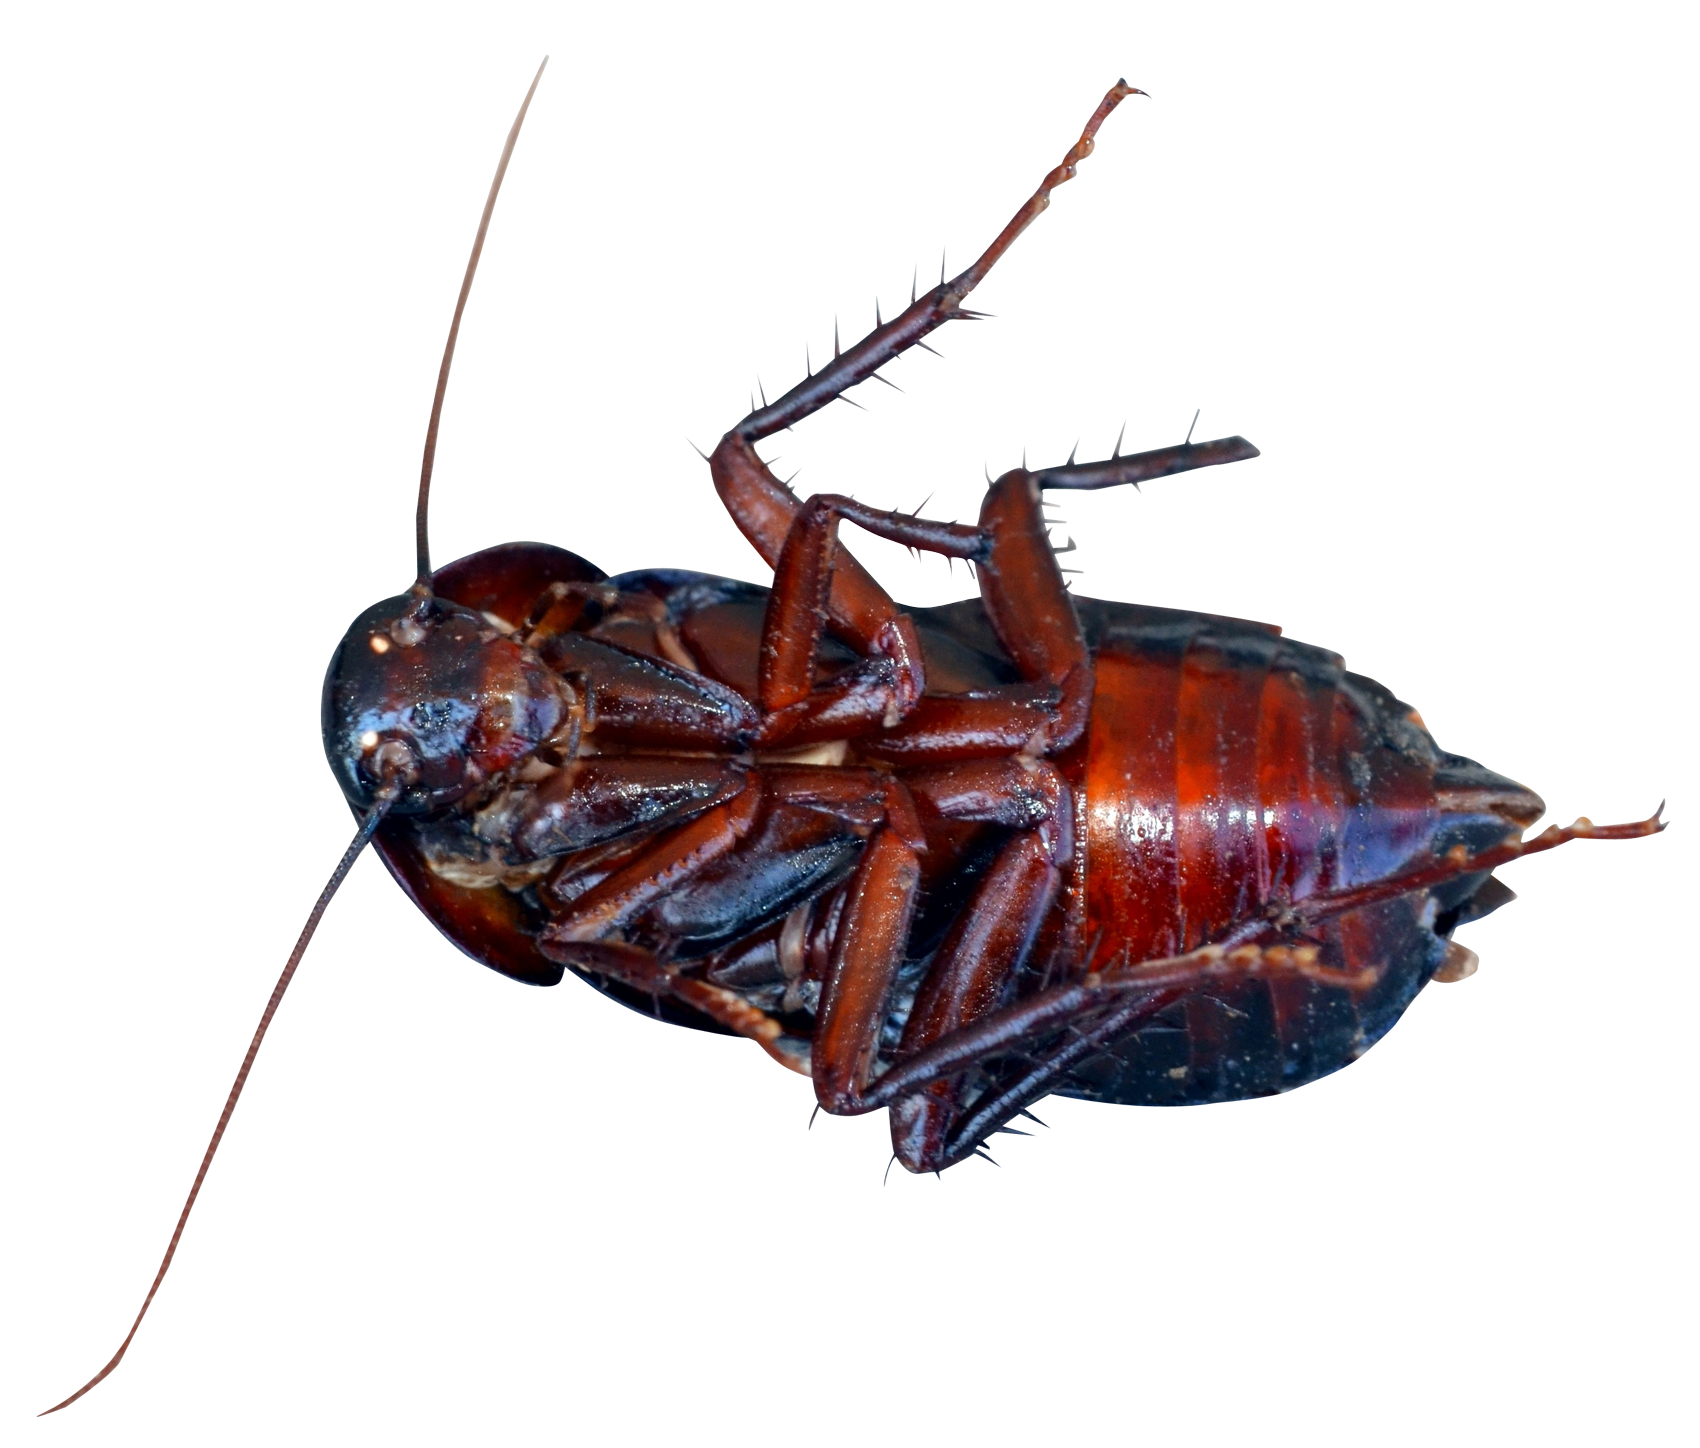 A Close Up Of A Roach